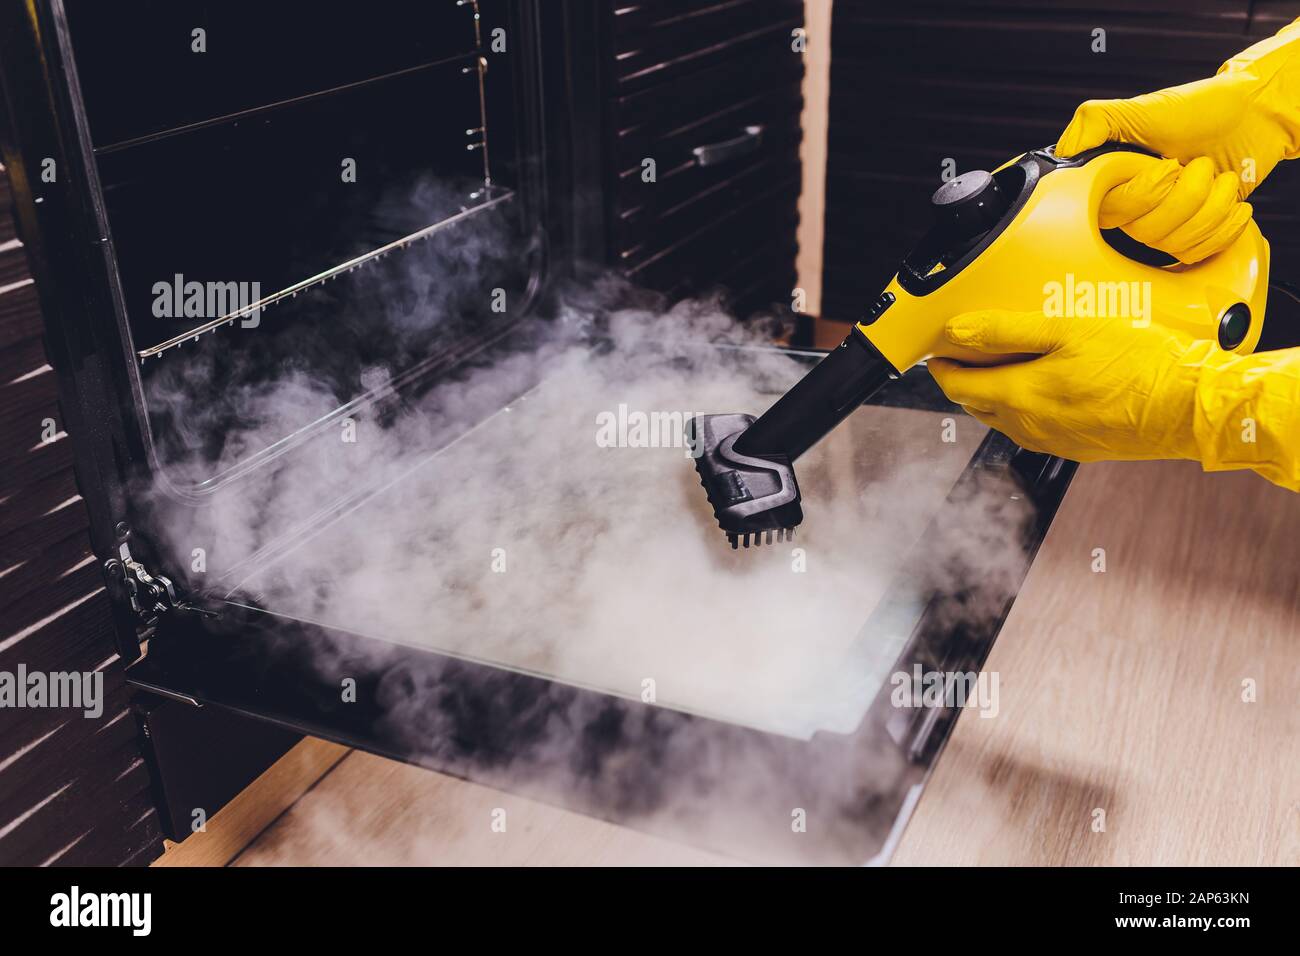 Dampfreinigung, Backofen, Haustreinigung Hand nah oben Stockfotografie -  Alamy